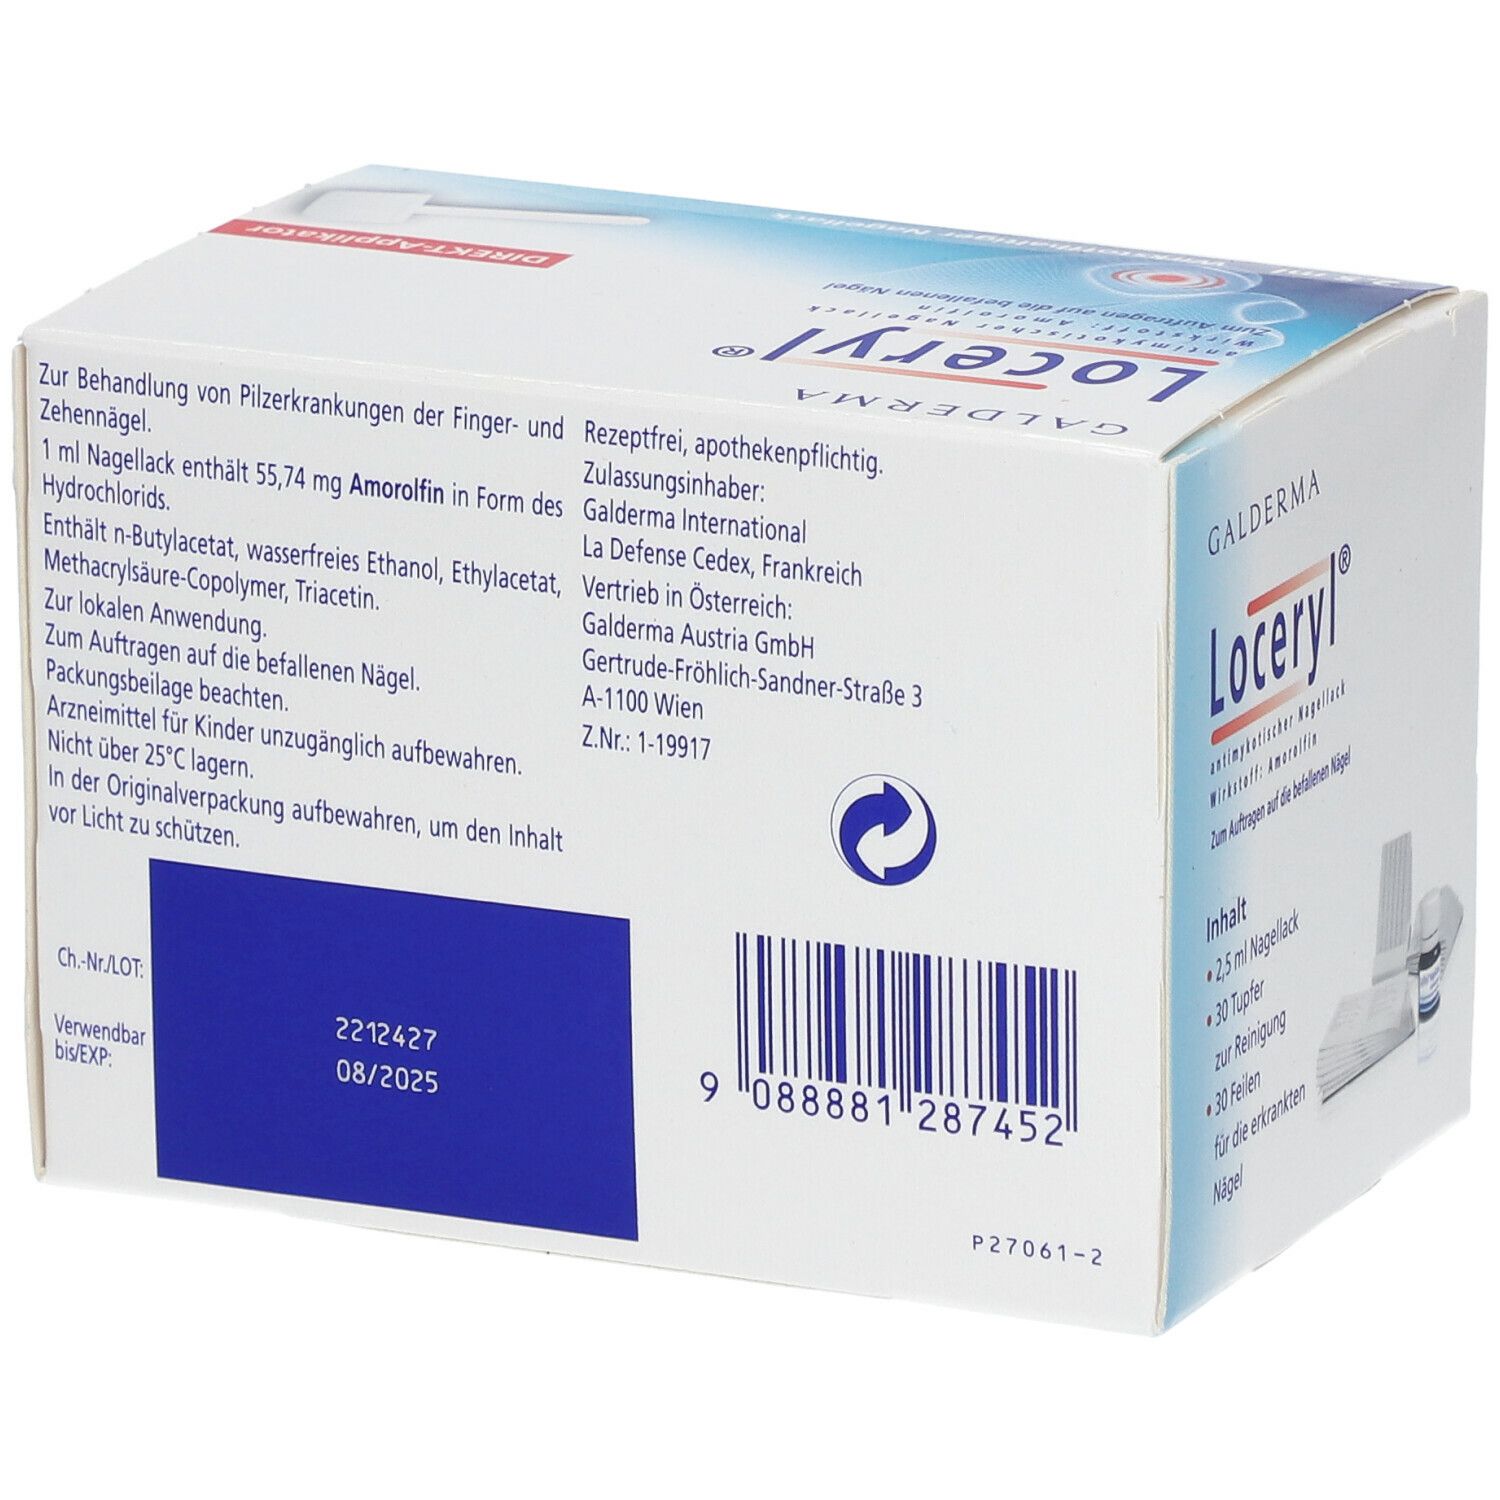 Loceryl® antimykotischer Nagellack